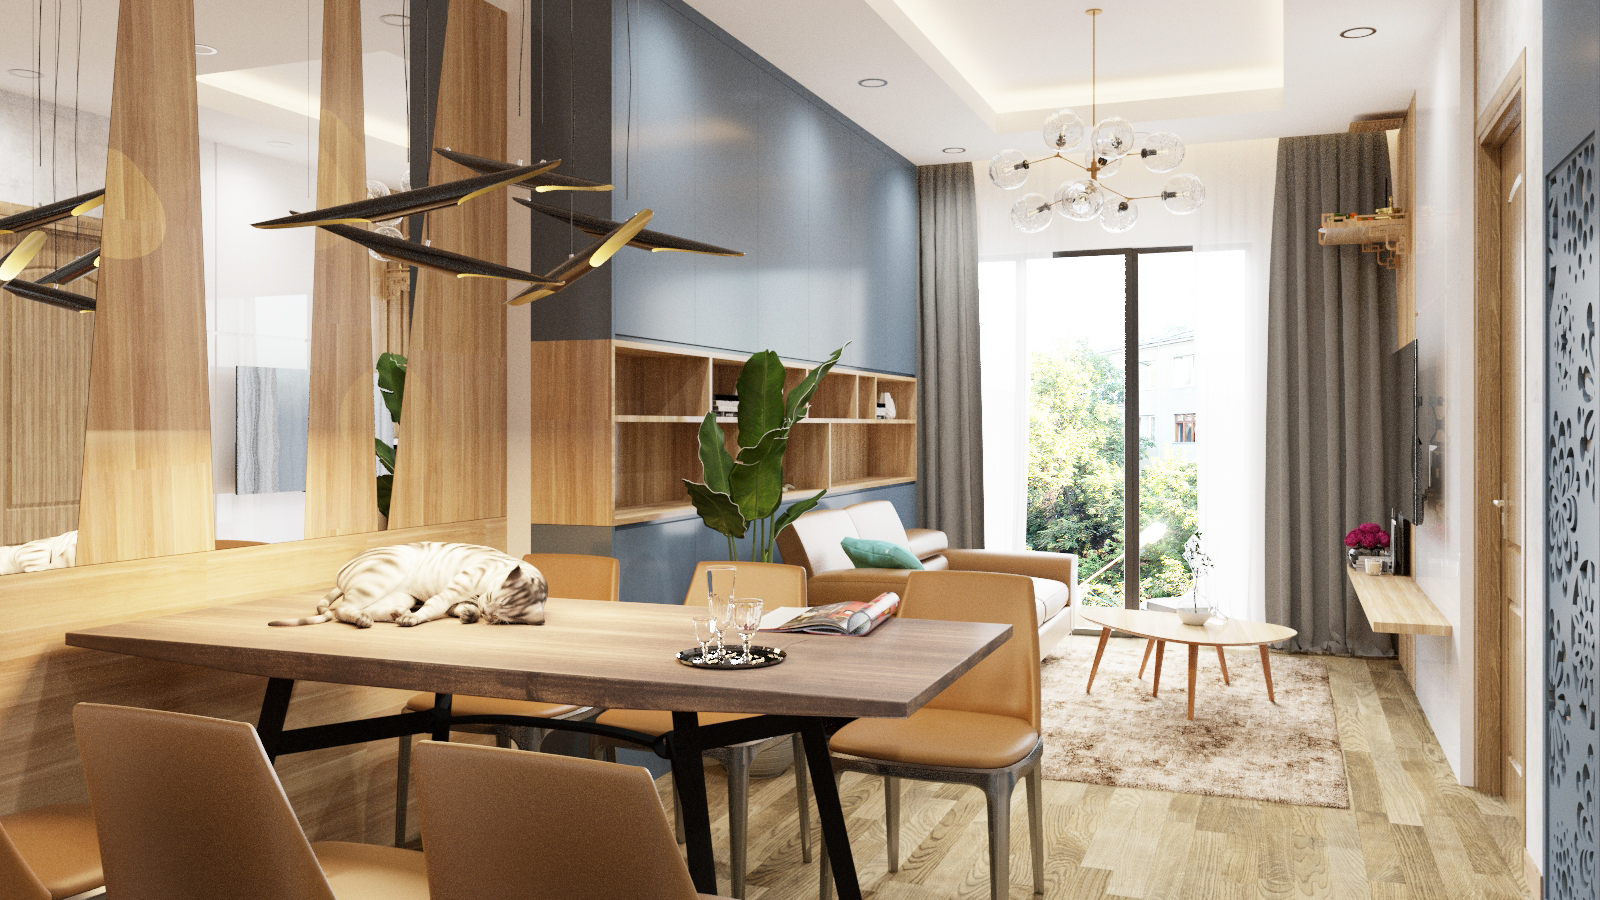 Thiết kế nội thất: Không gian sống của bạn đang đơn điệu và tẻ nhạt? Hãy thay đổi bằng việc áp dụng các giải pháp thiết kế nội thất thật độc đáo và tinh tế. Bạn sẽ có được một không gian sống sáng tạo, thú vị và hoàn hảo cho cả gia đình.